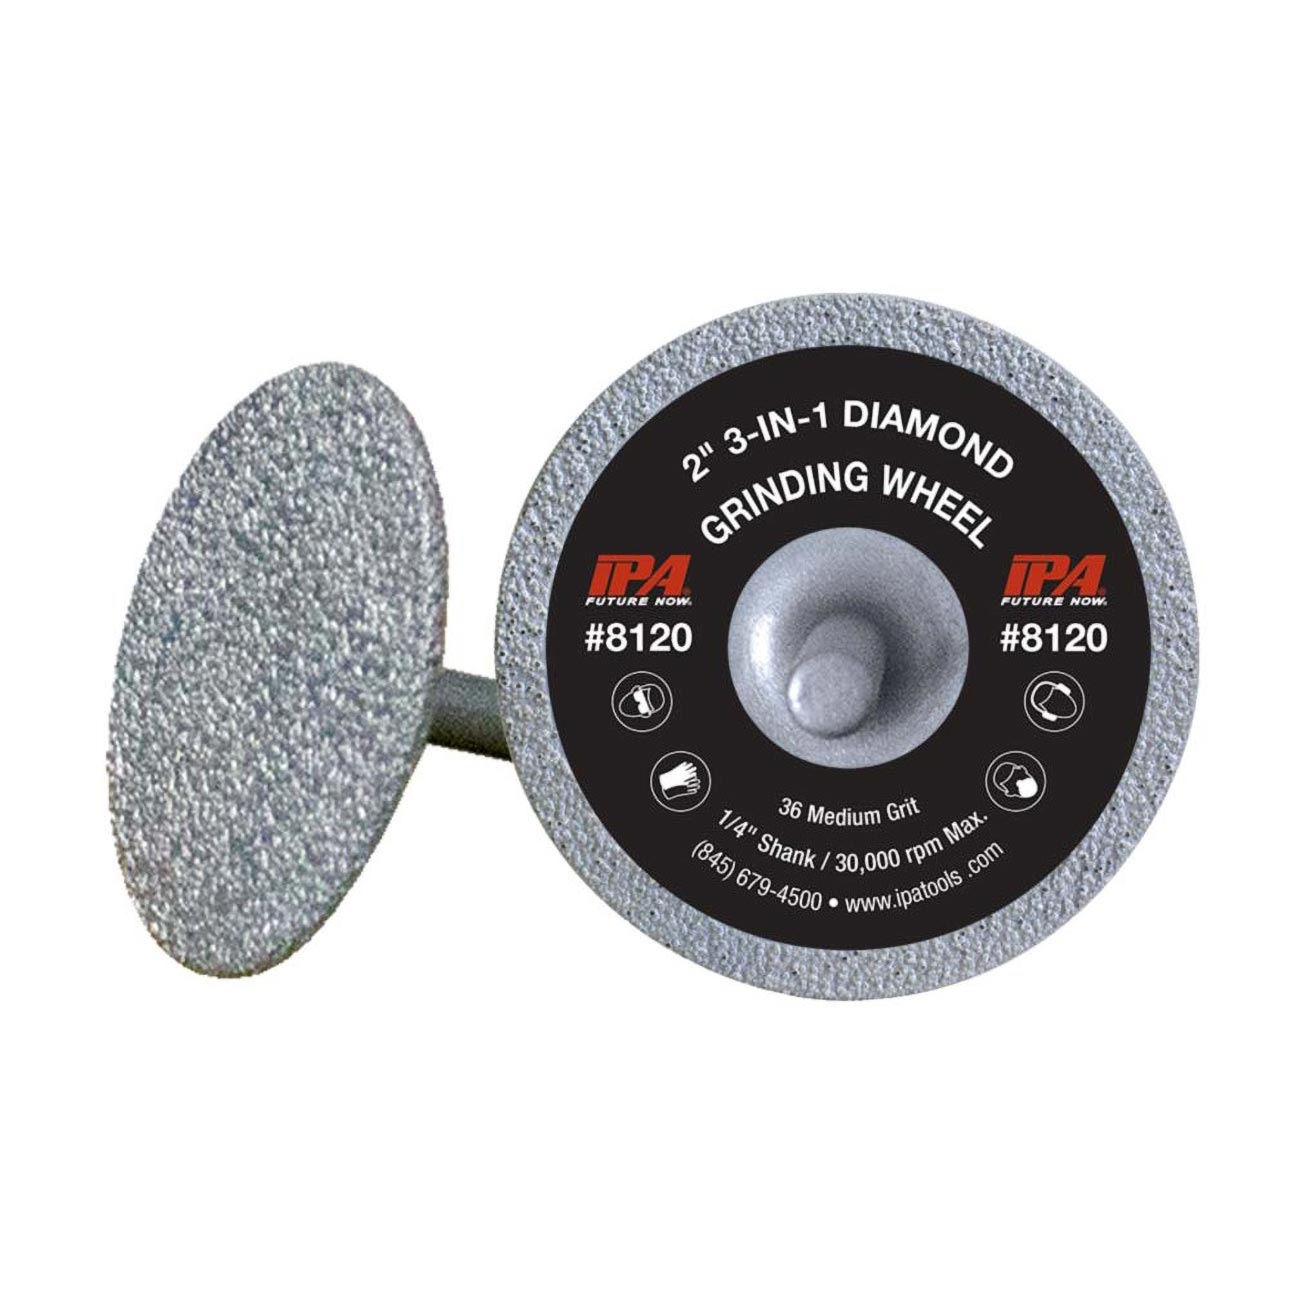 IPA 2GC 3-in-1 Diamond Grinding Wheel